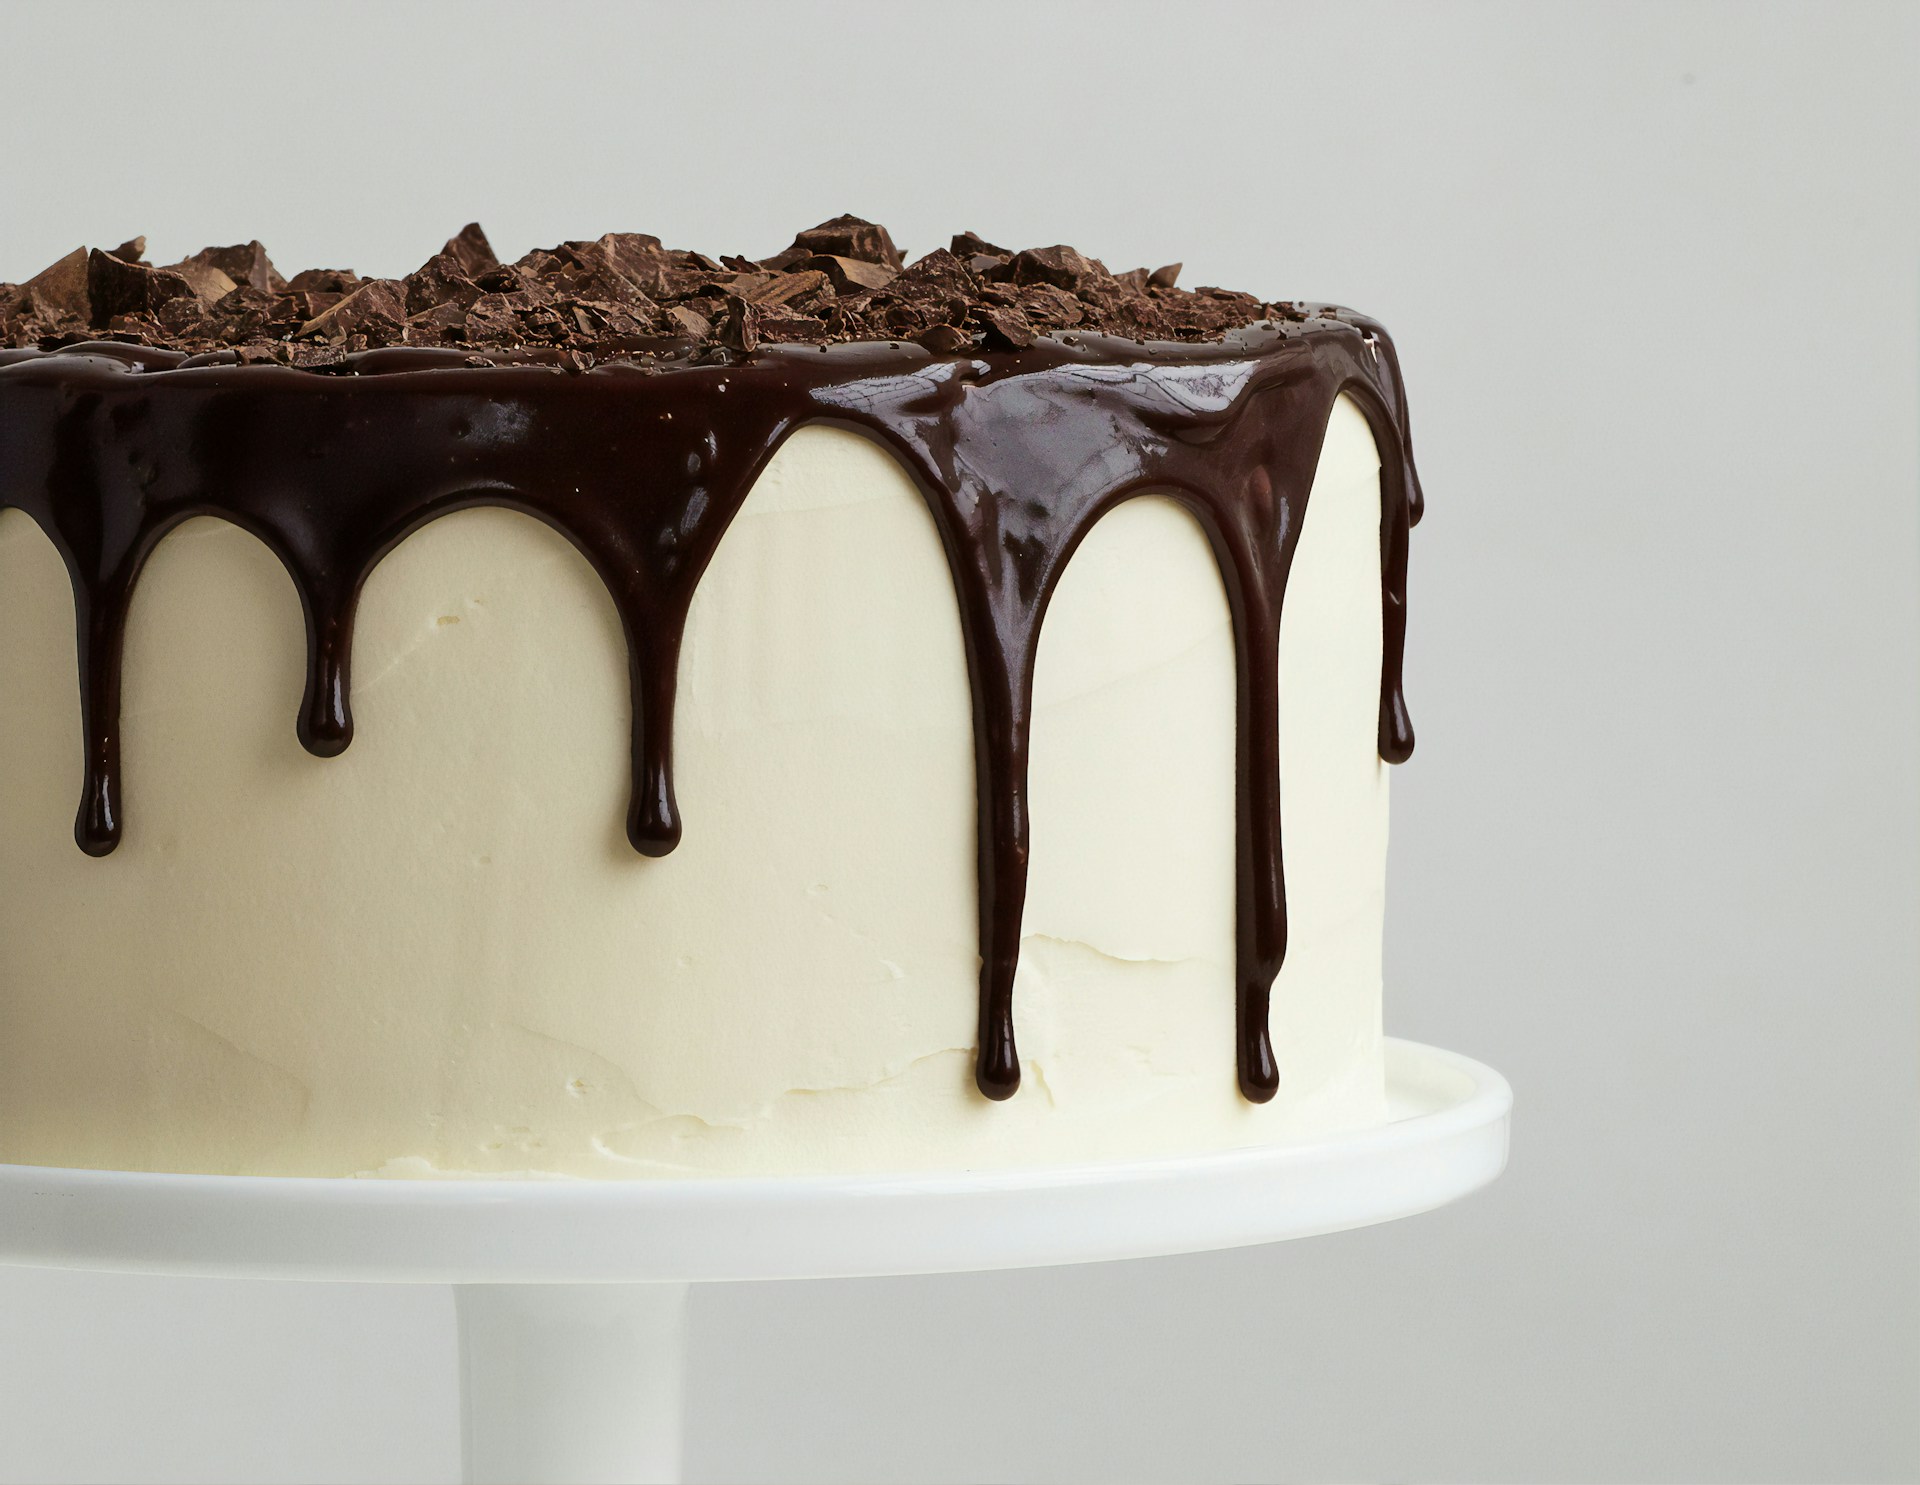 Stojak na tort – 3 rodzaje, które pozwolą prezentować torty w przepiękny sposób